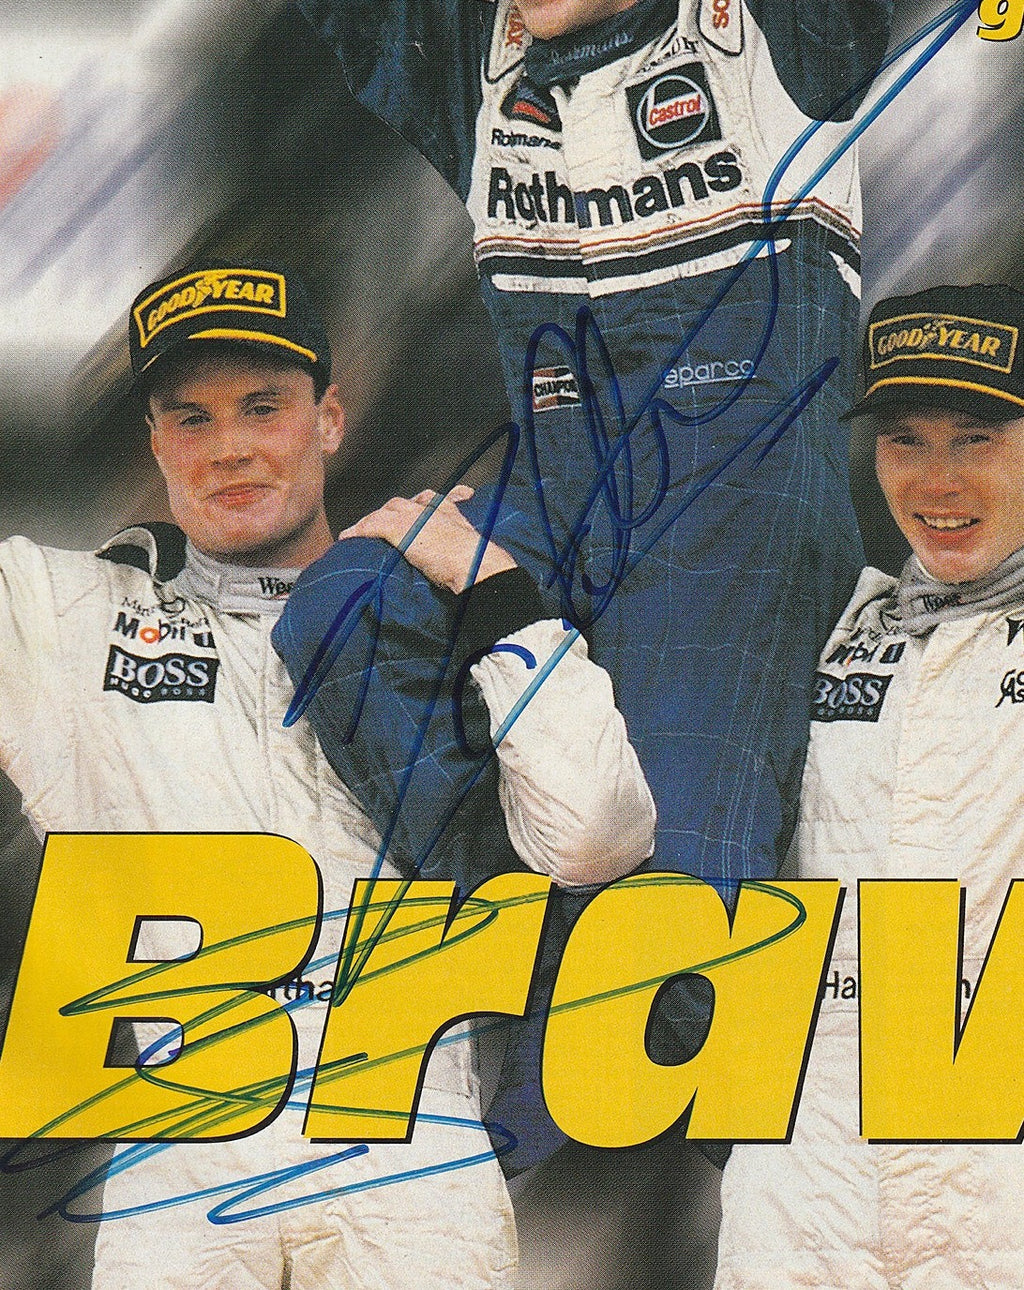 JACQUES VILLENEUVE autographed 1997 F1 Championship AUTOSPORT magazine